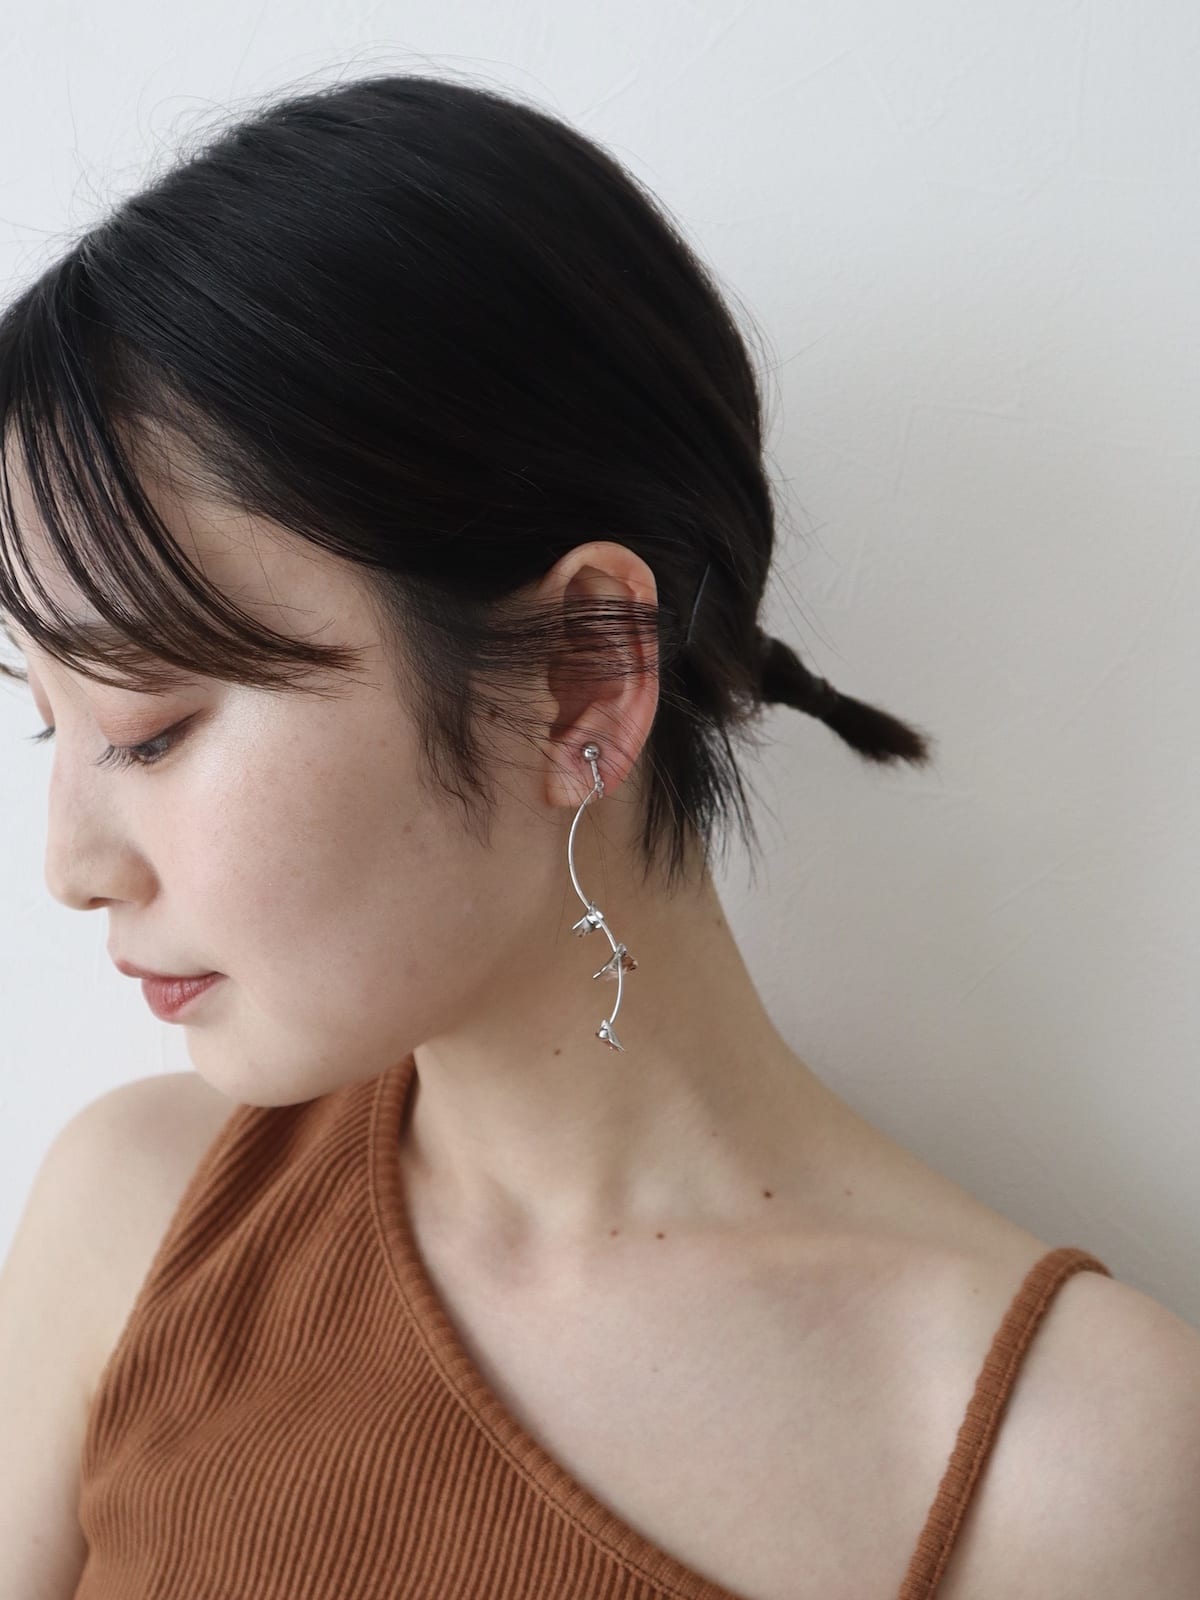 blooming pierce/earing